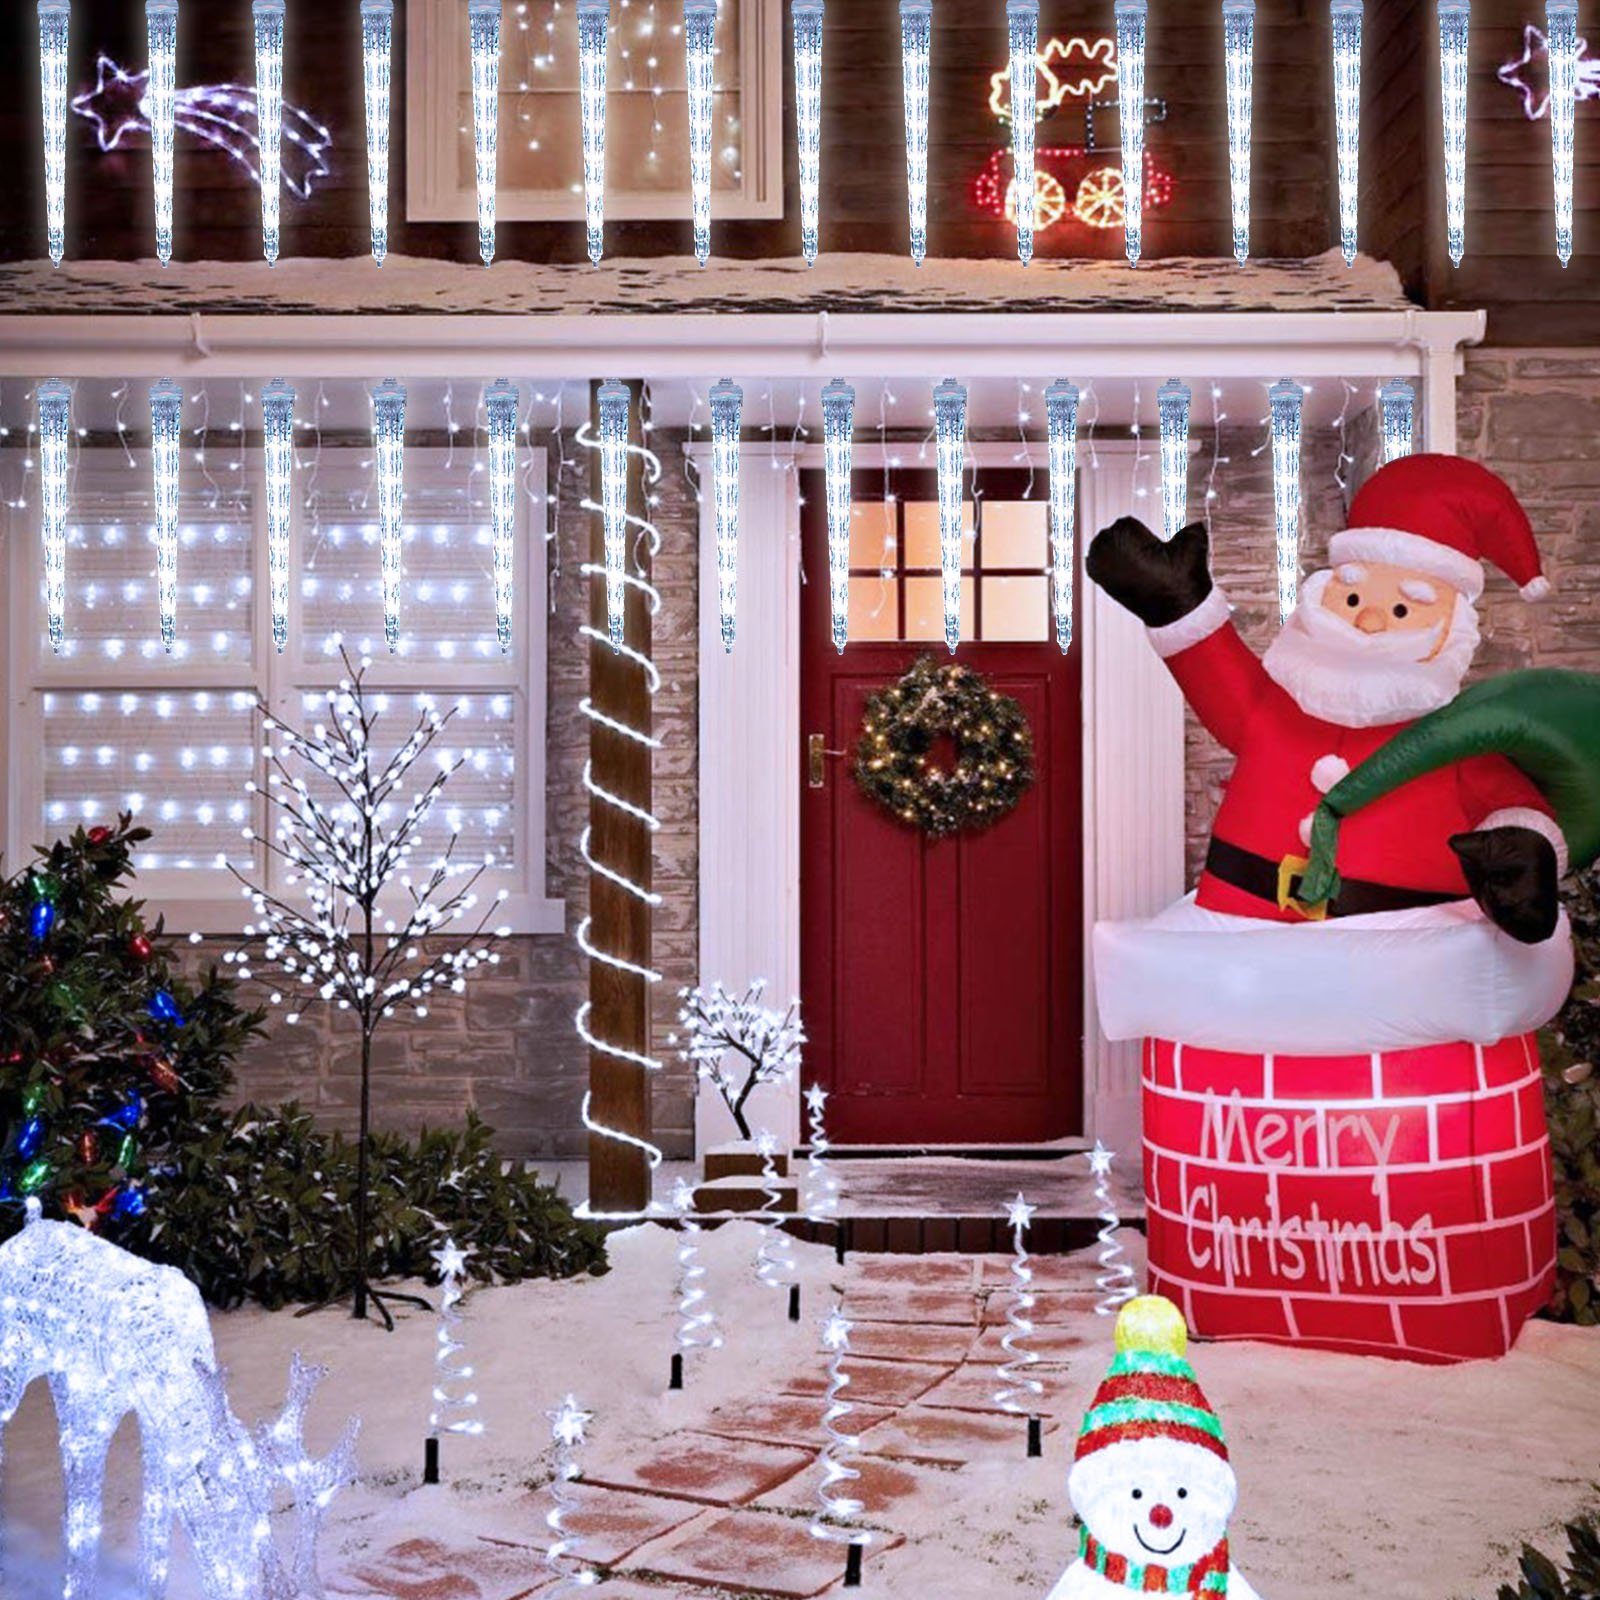 Sunicol LED-Lichterkette für Schneefalleffekt Meteoritenschauer, Eiszapfen, Weiß Weihnachtsbeleuchtung, Wasserdichte, Lichterregen, Außen/Garten/Hochzeit/Party